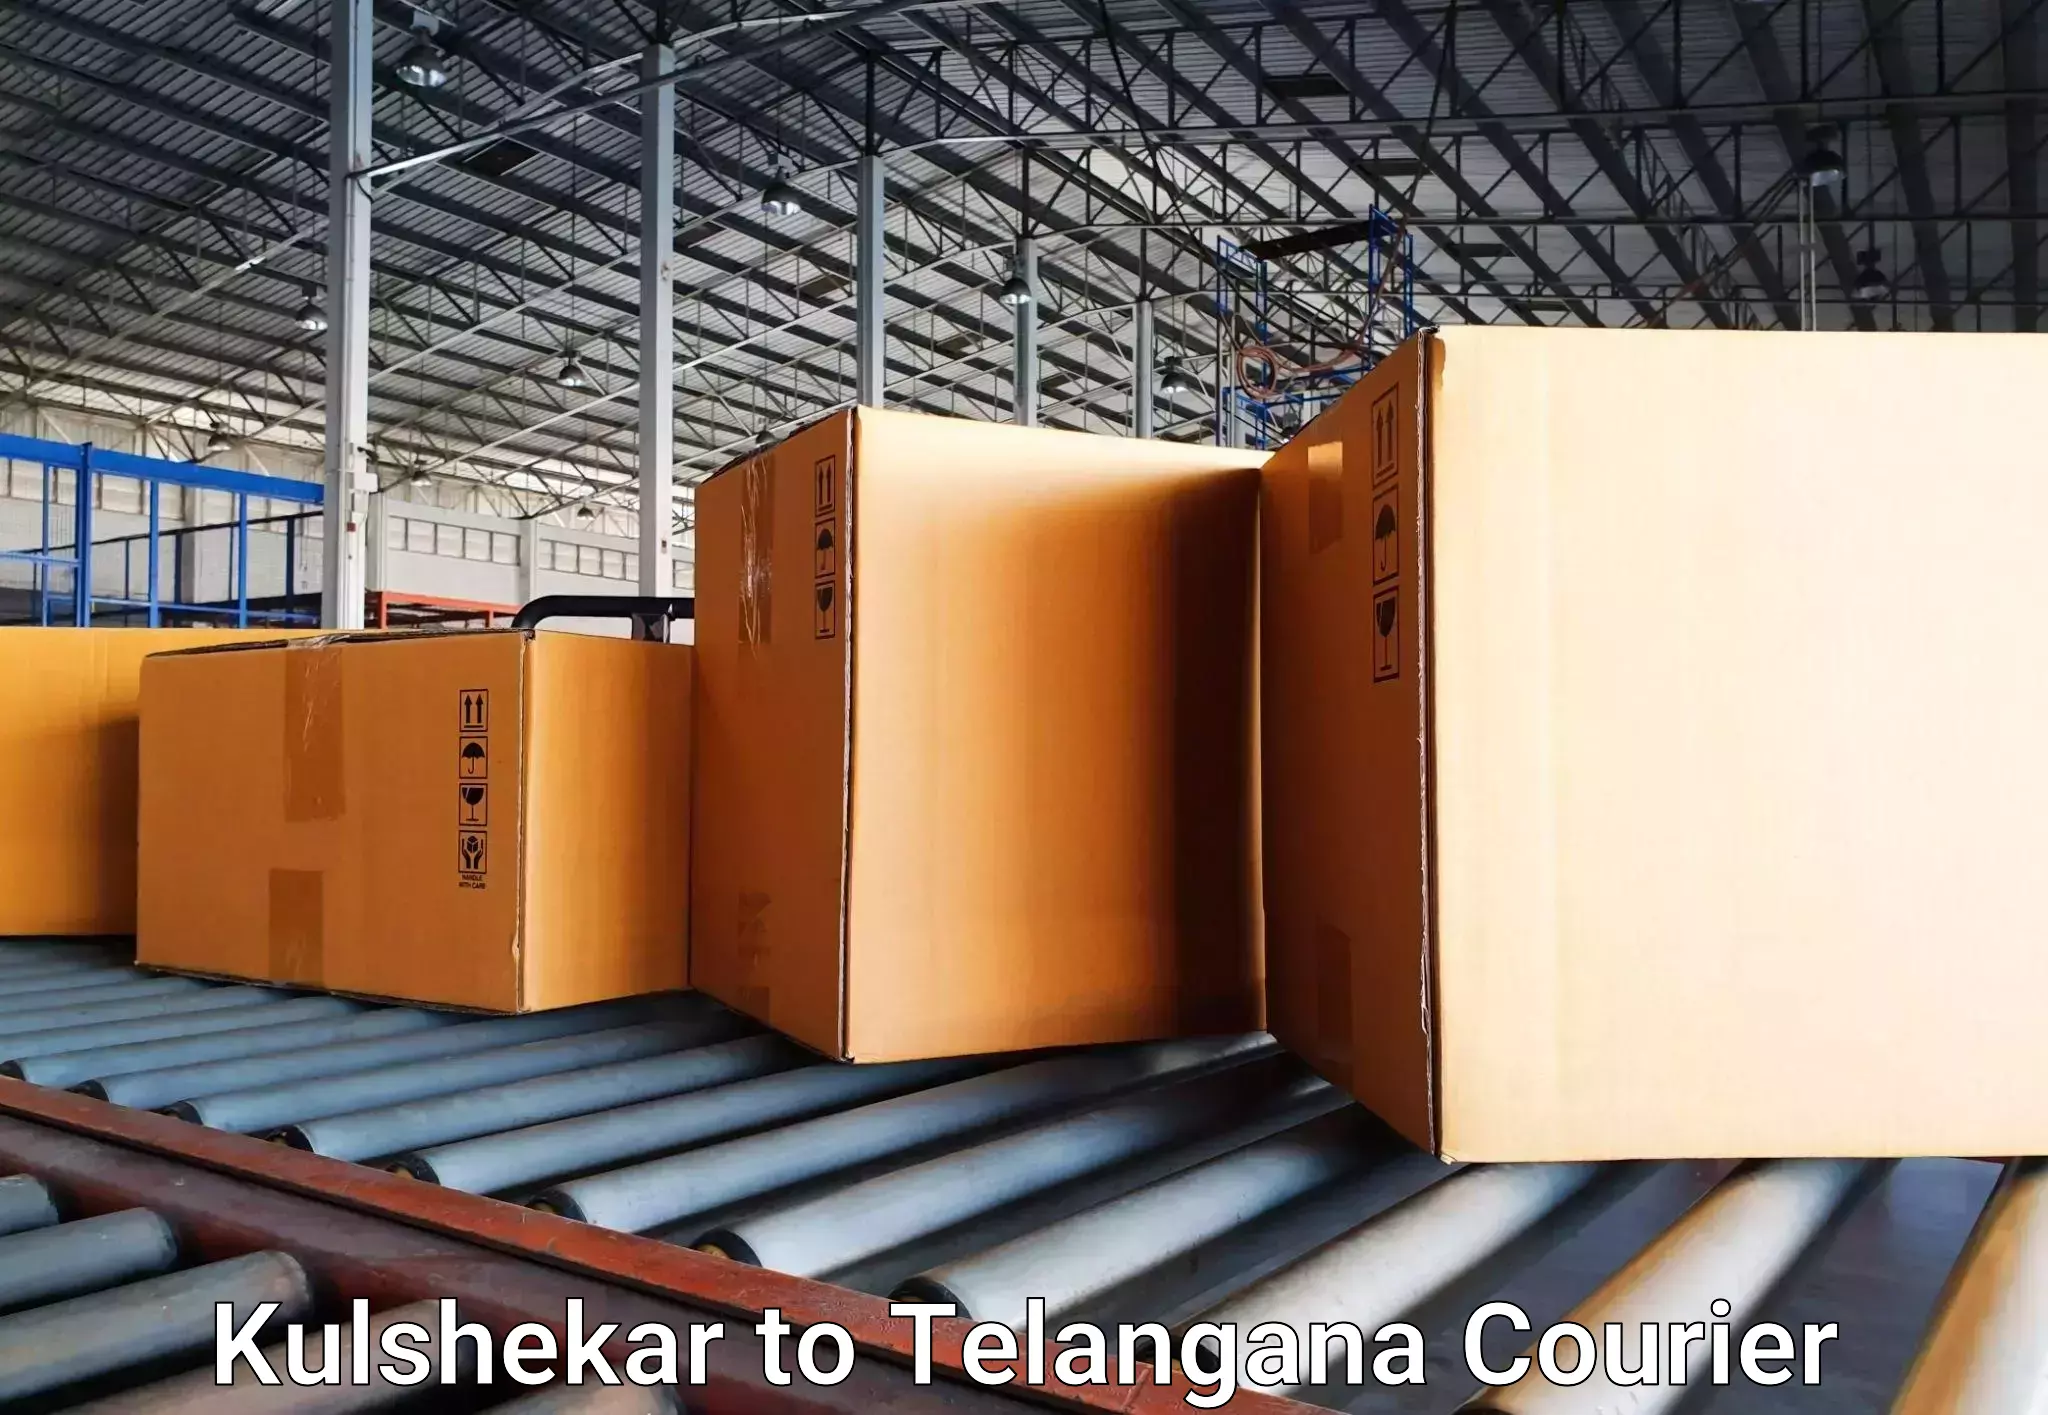 Luggage transport consulting Kulshekar to Madhavaram